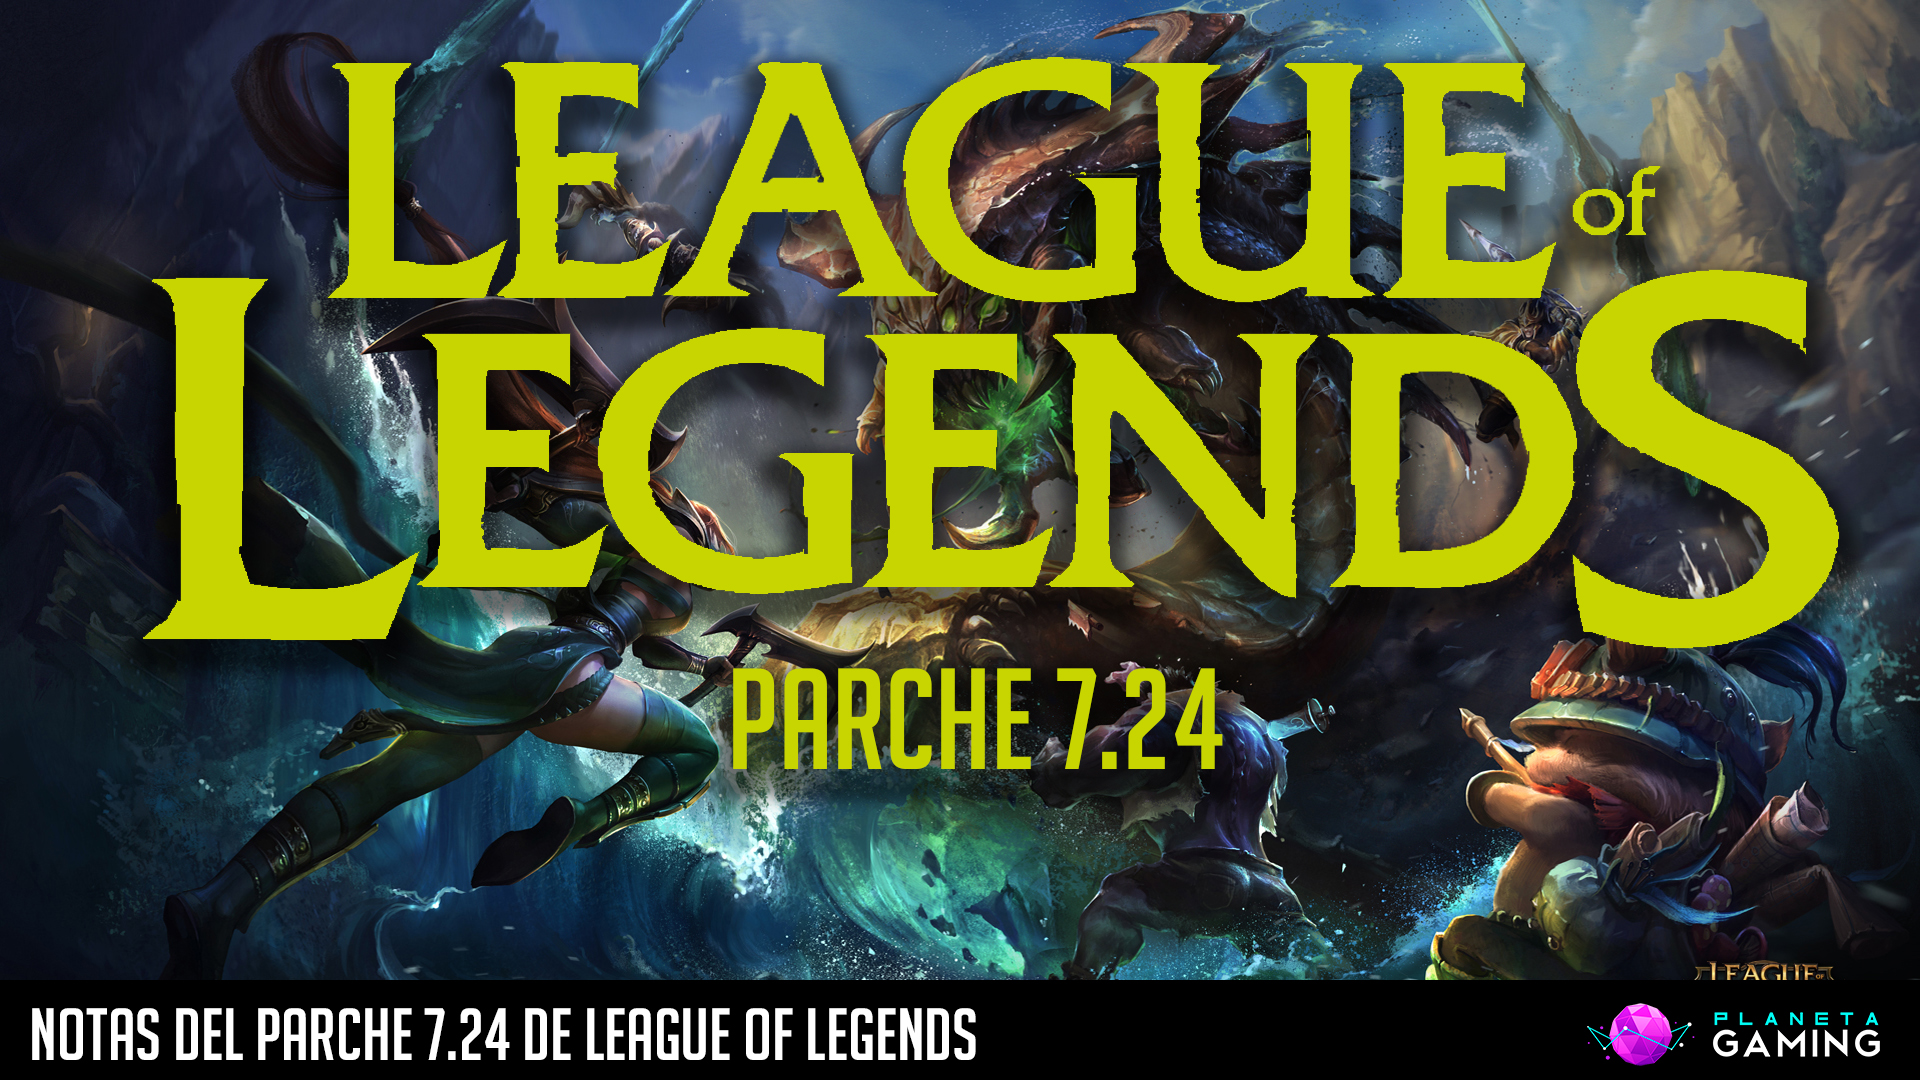 Notas del parche 7.24 de League of Legends